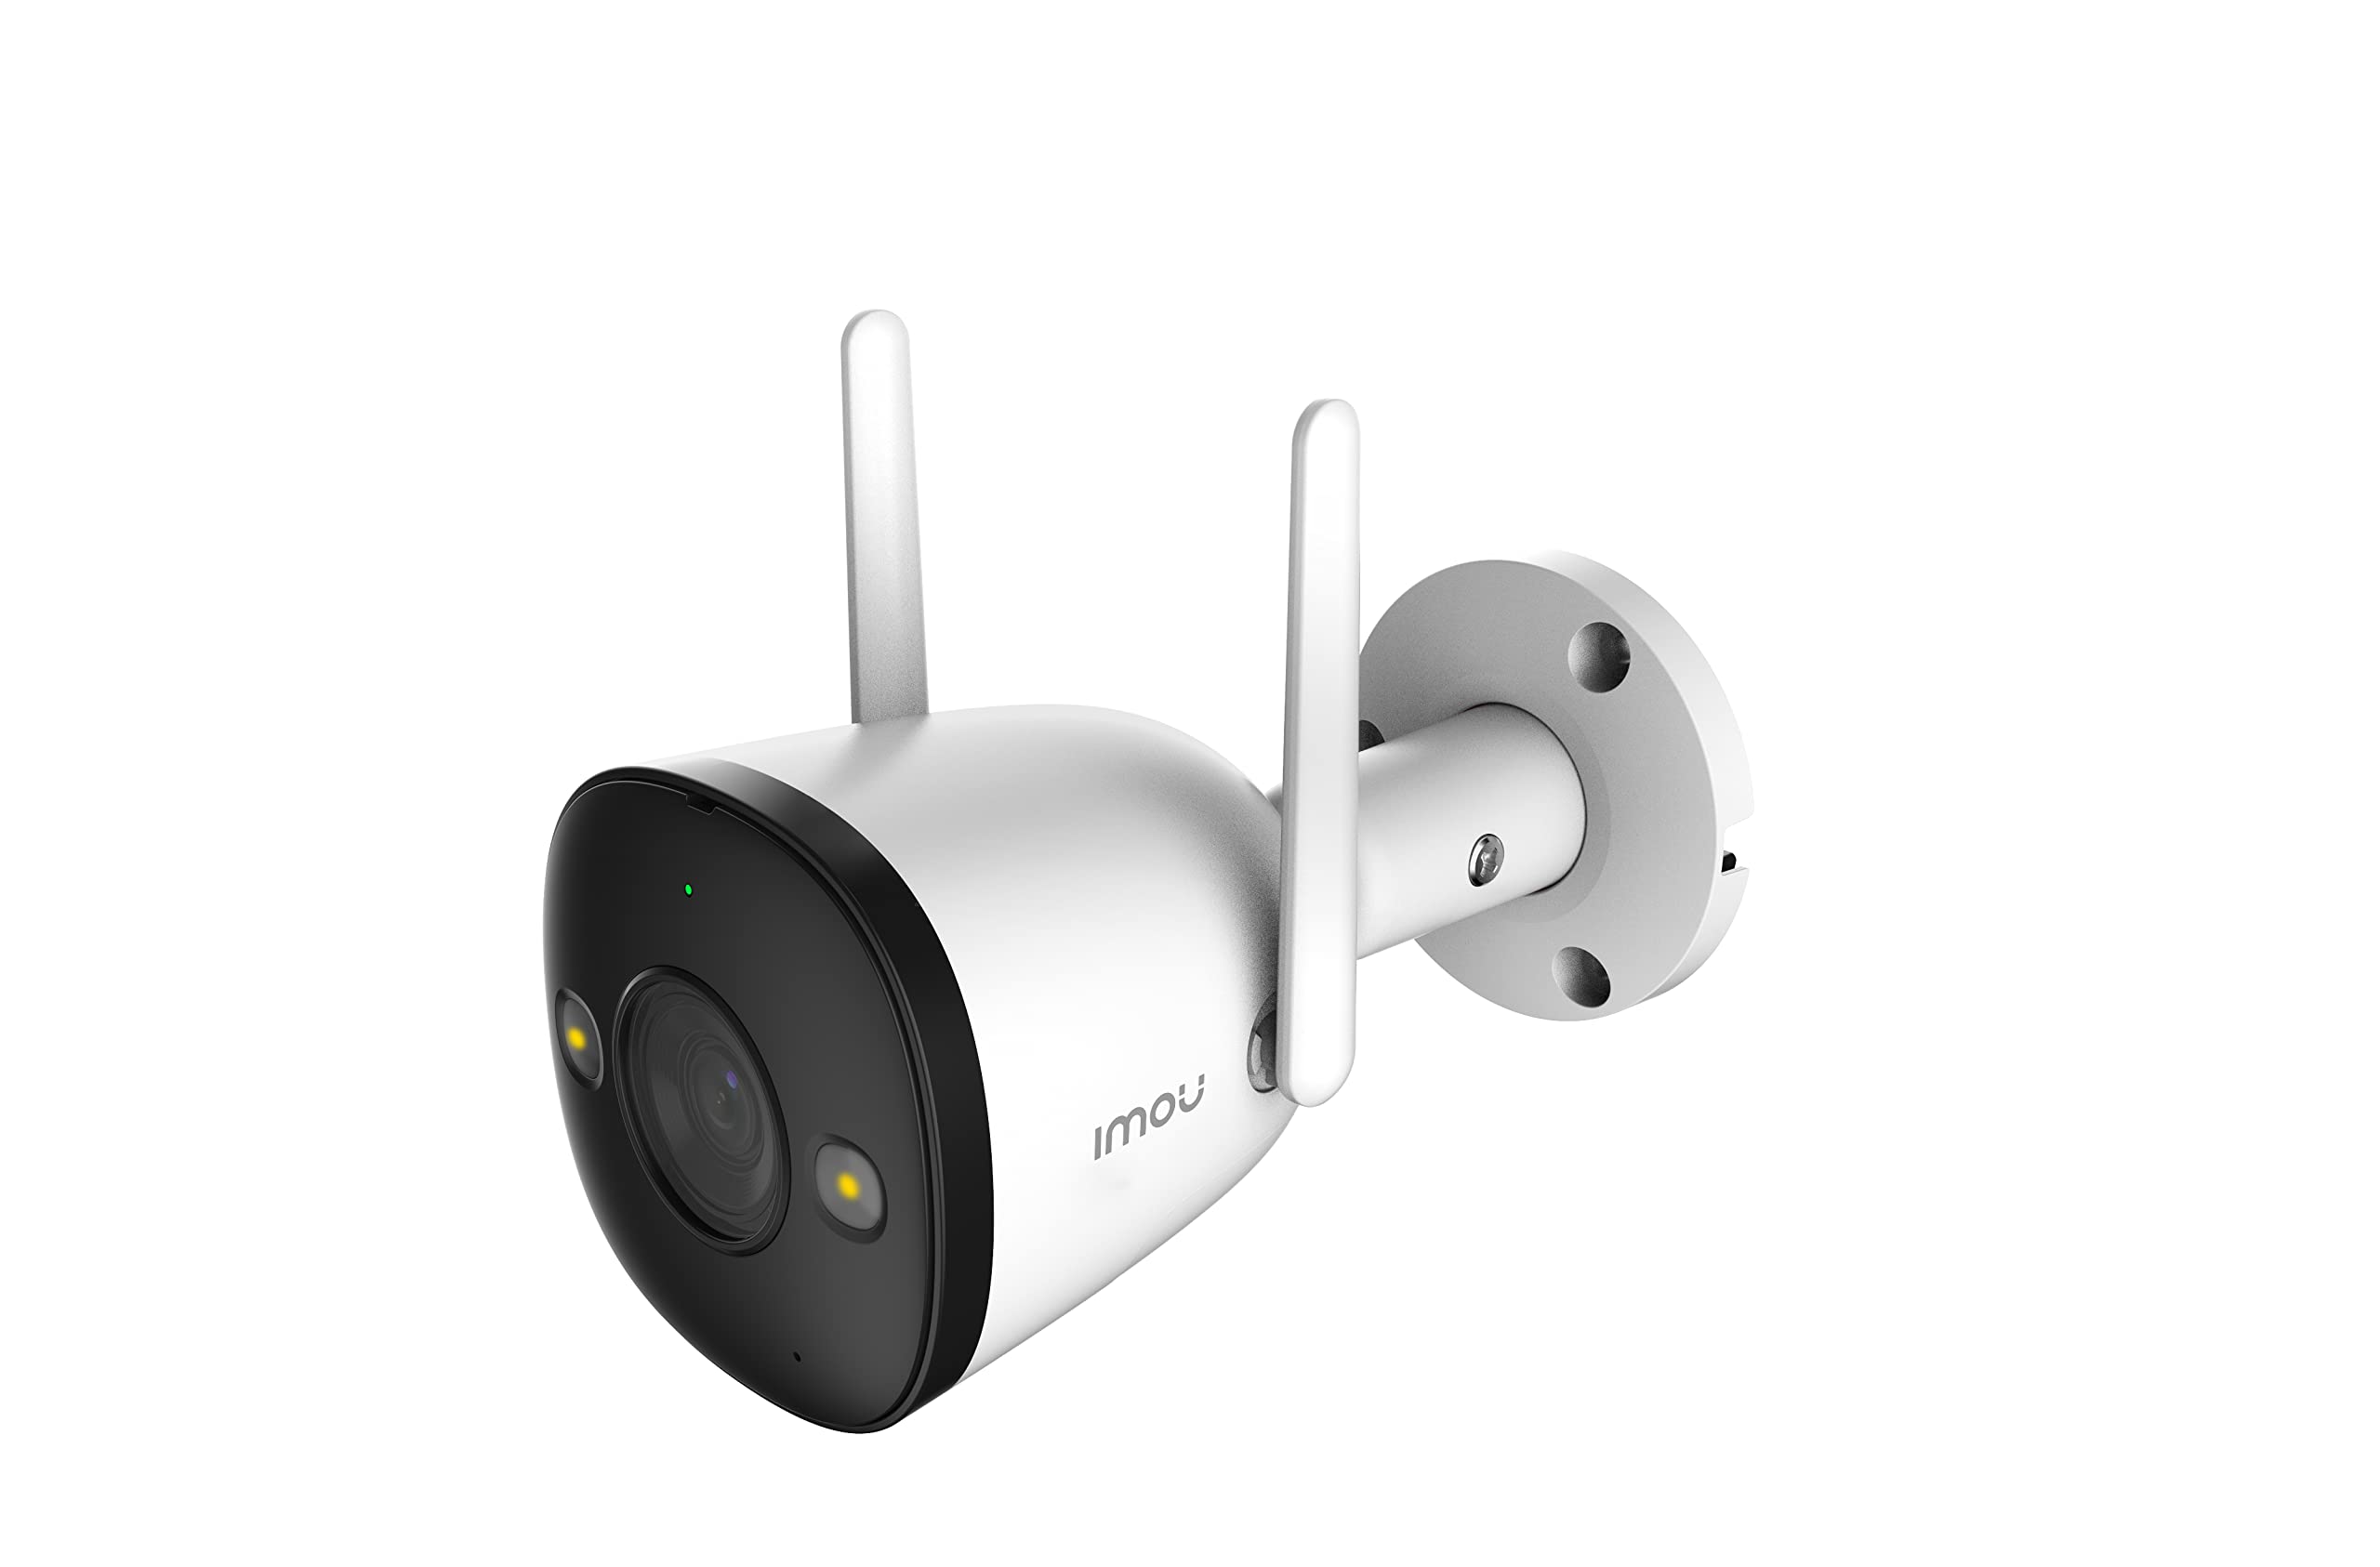 IMOU BULLET 2 4MP WI-FI CCTV